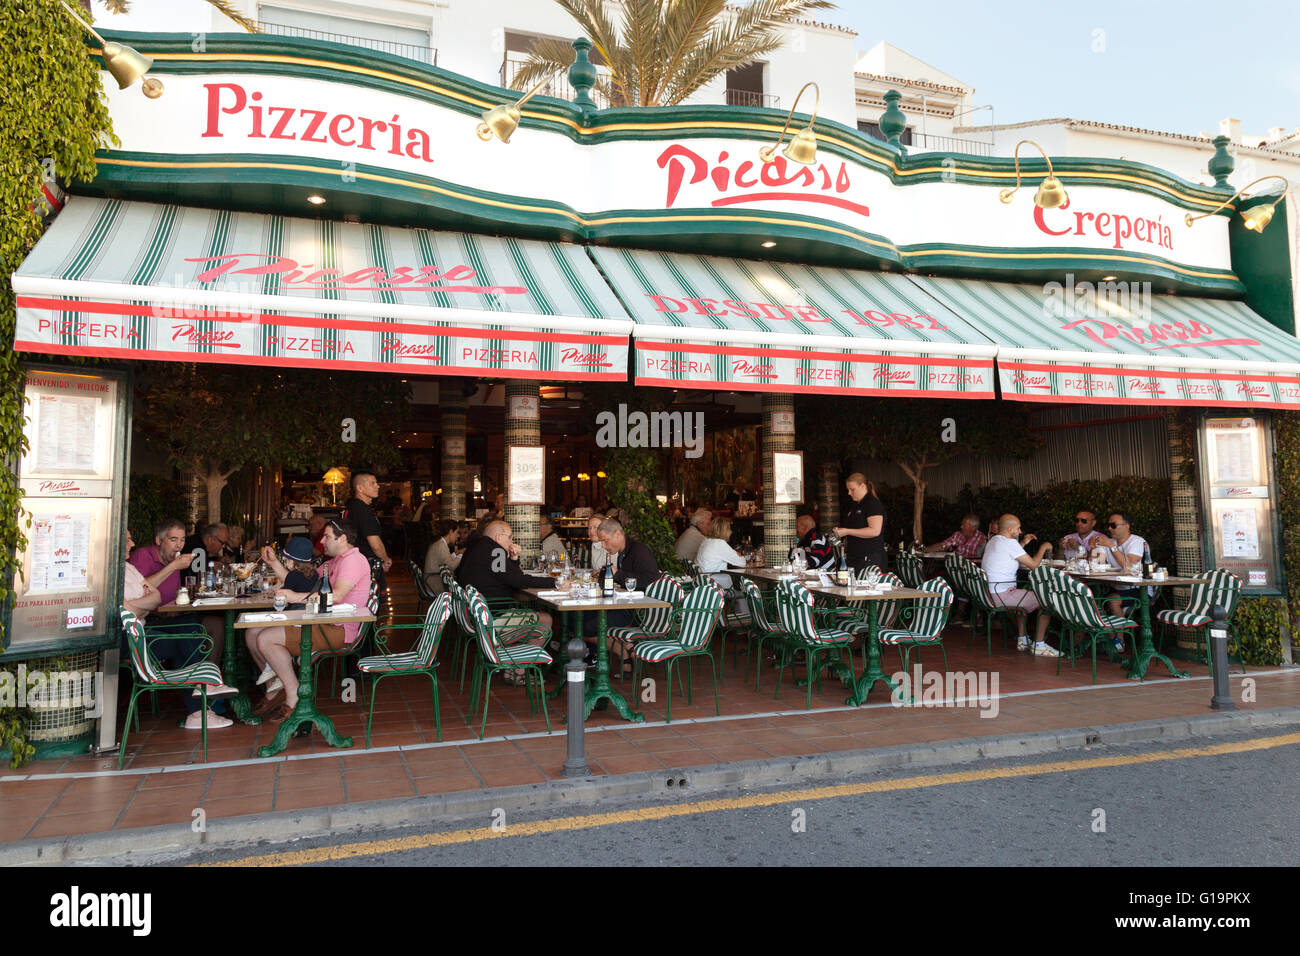 Picasso pizzería y crepería restaurante exterior, Puerto Banus, Marbella,  Costa del Sol, Andalucía, España Fotografía de stock - Alamy